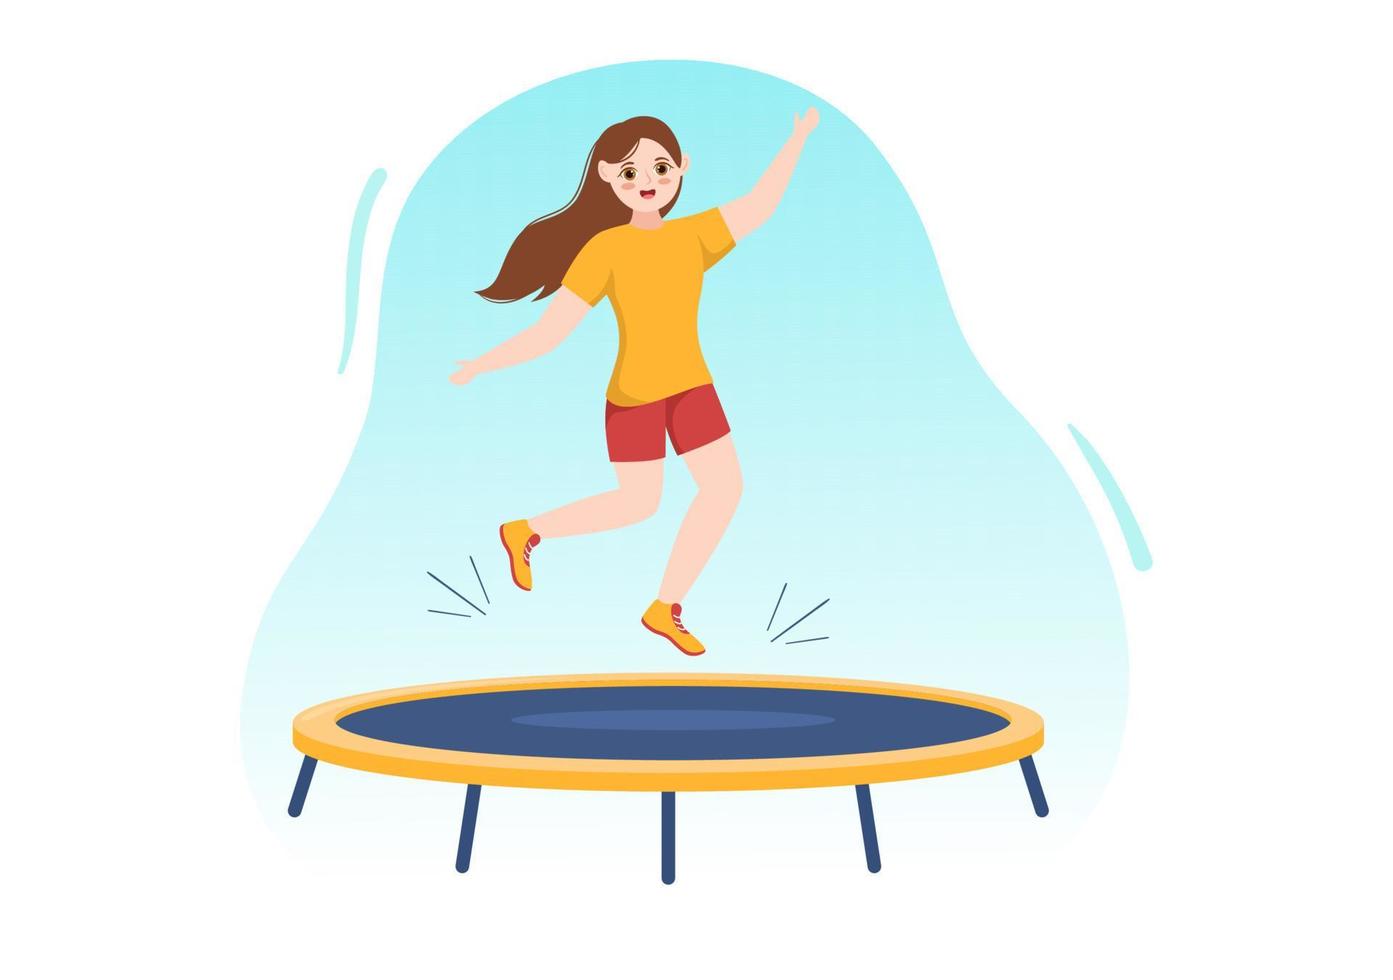 trampolinillustration mit der jugend, die auf ein trampoline in der hand gezeichneten flachen karikatursommer-hintergrundschablone für aktivitäten im freien springt vektor